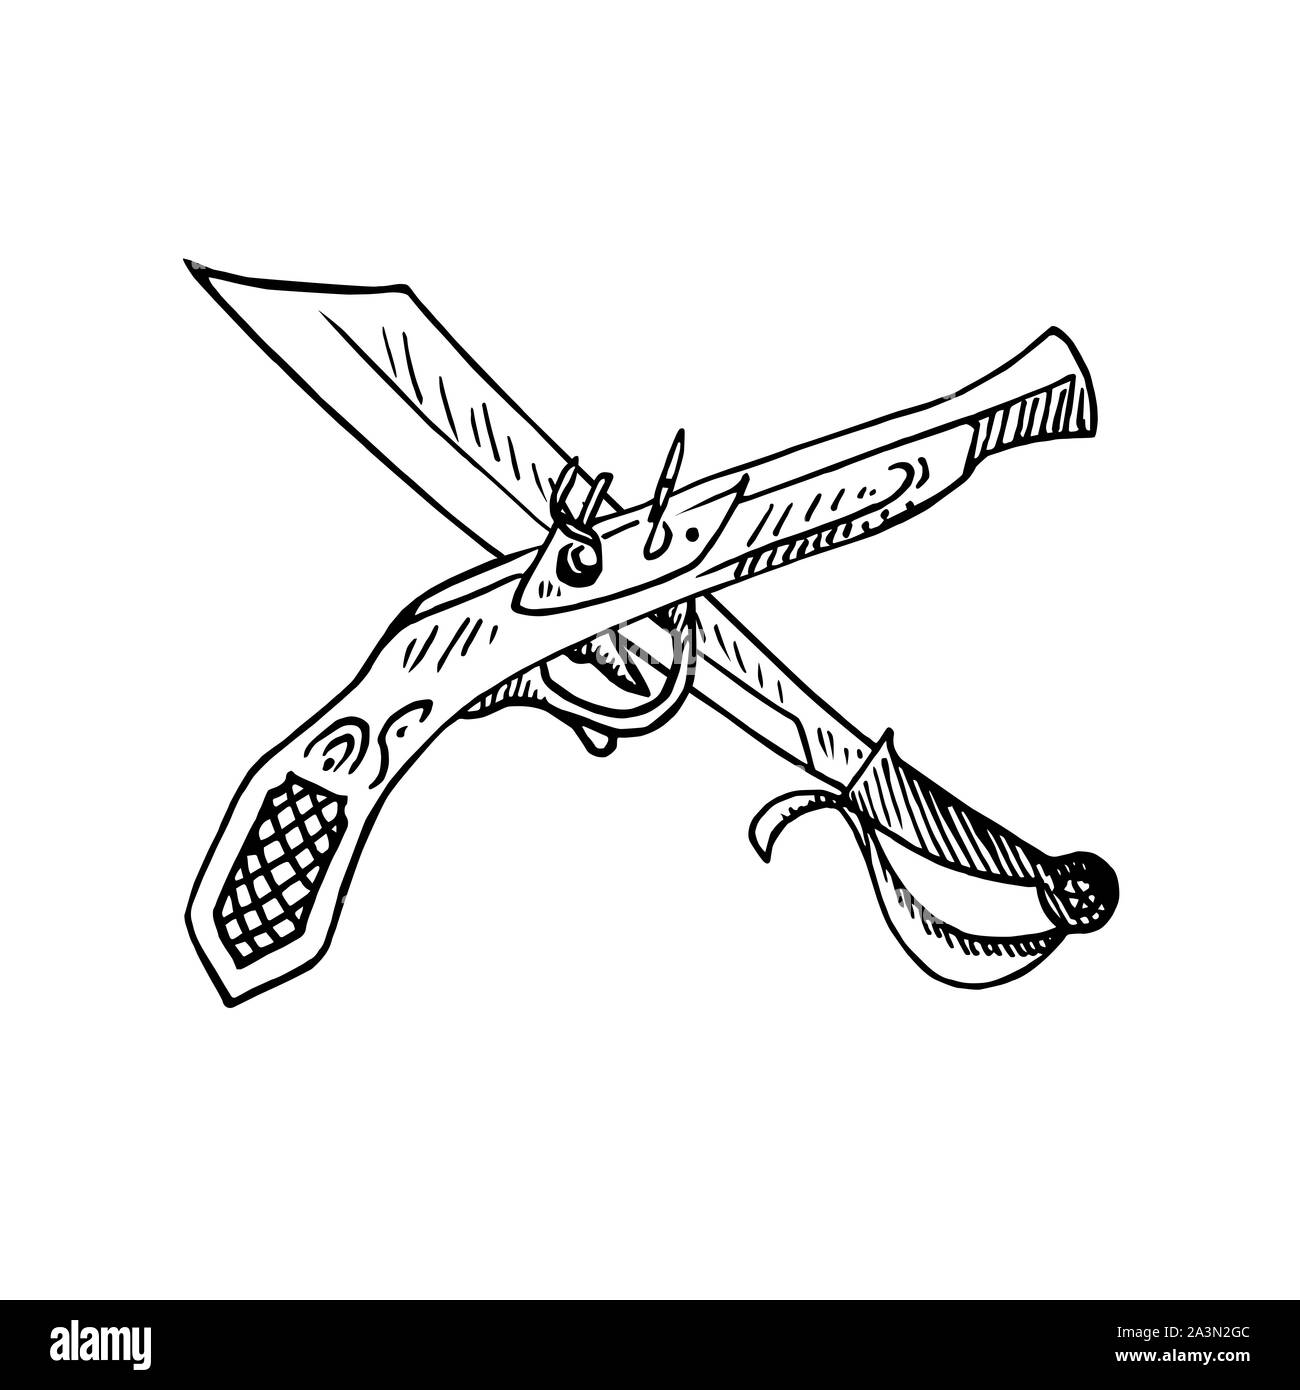 Pistolet ancien style machette et croisés, side view, hand drawn doodle, croquis, illustration en noir et blanc Banque D'Images